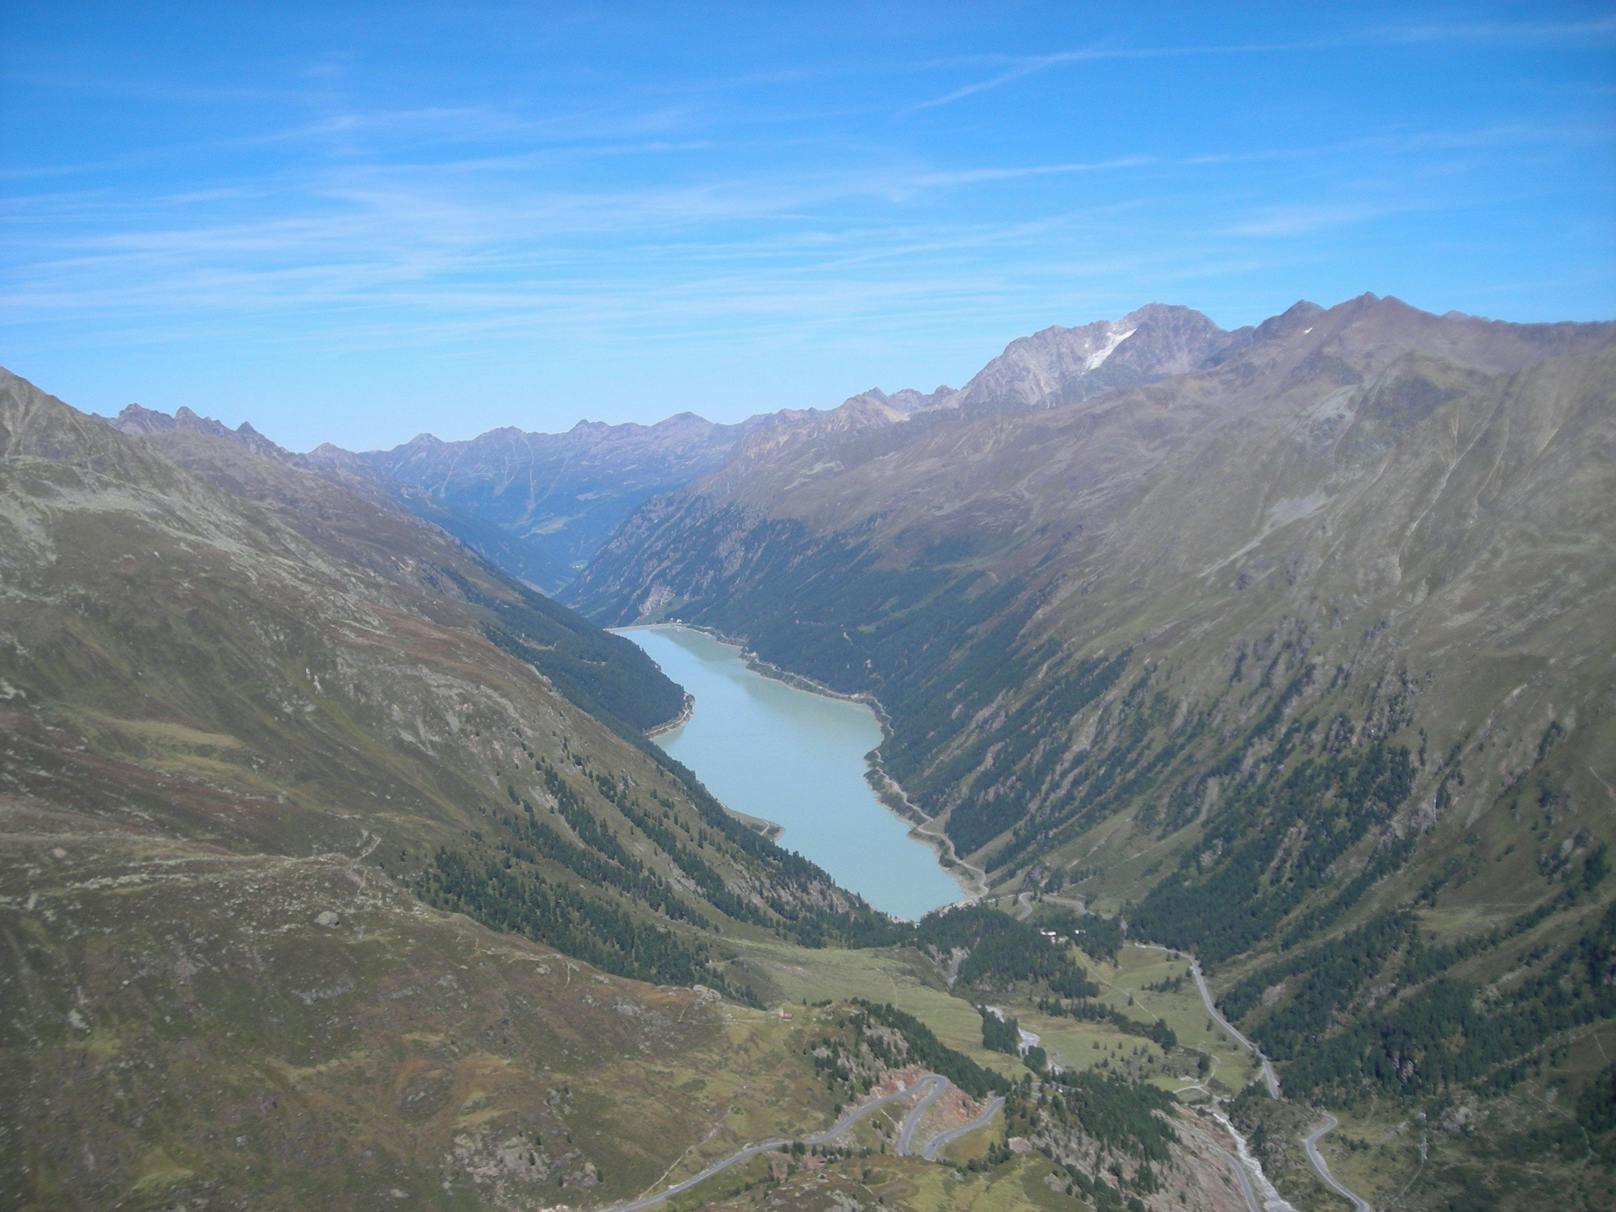 Der WWF warnt, dass ein Bergsturz ähnlich wie in der Silvretta auch im Kaunertal möglich ist. Im Bild der Gepatschspeicher, wo die Naturschutzorganisation bereits Hangrutschungen dokumentiert hat.